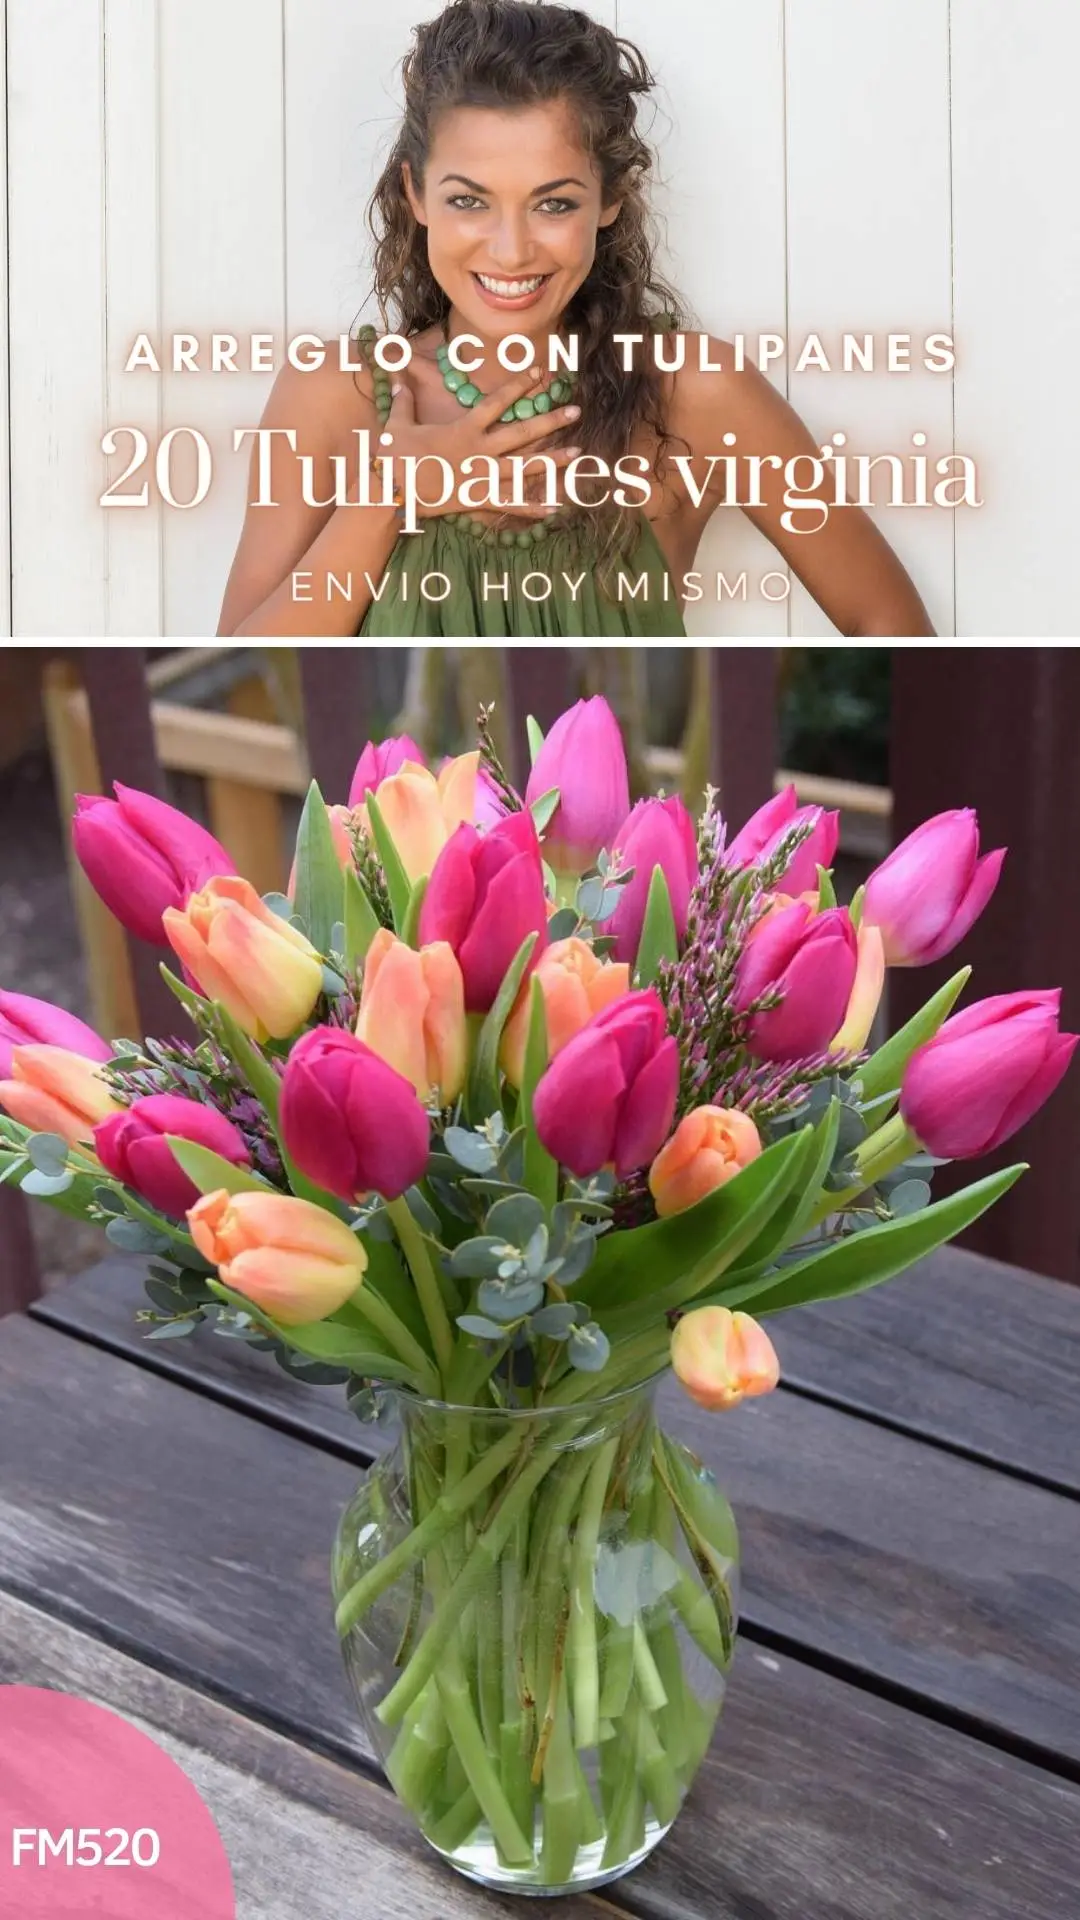 Arreglo con 20 tulipanes virginia